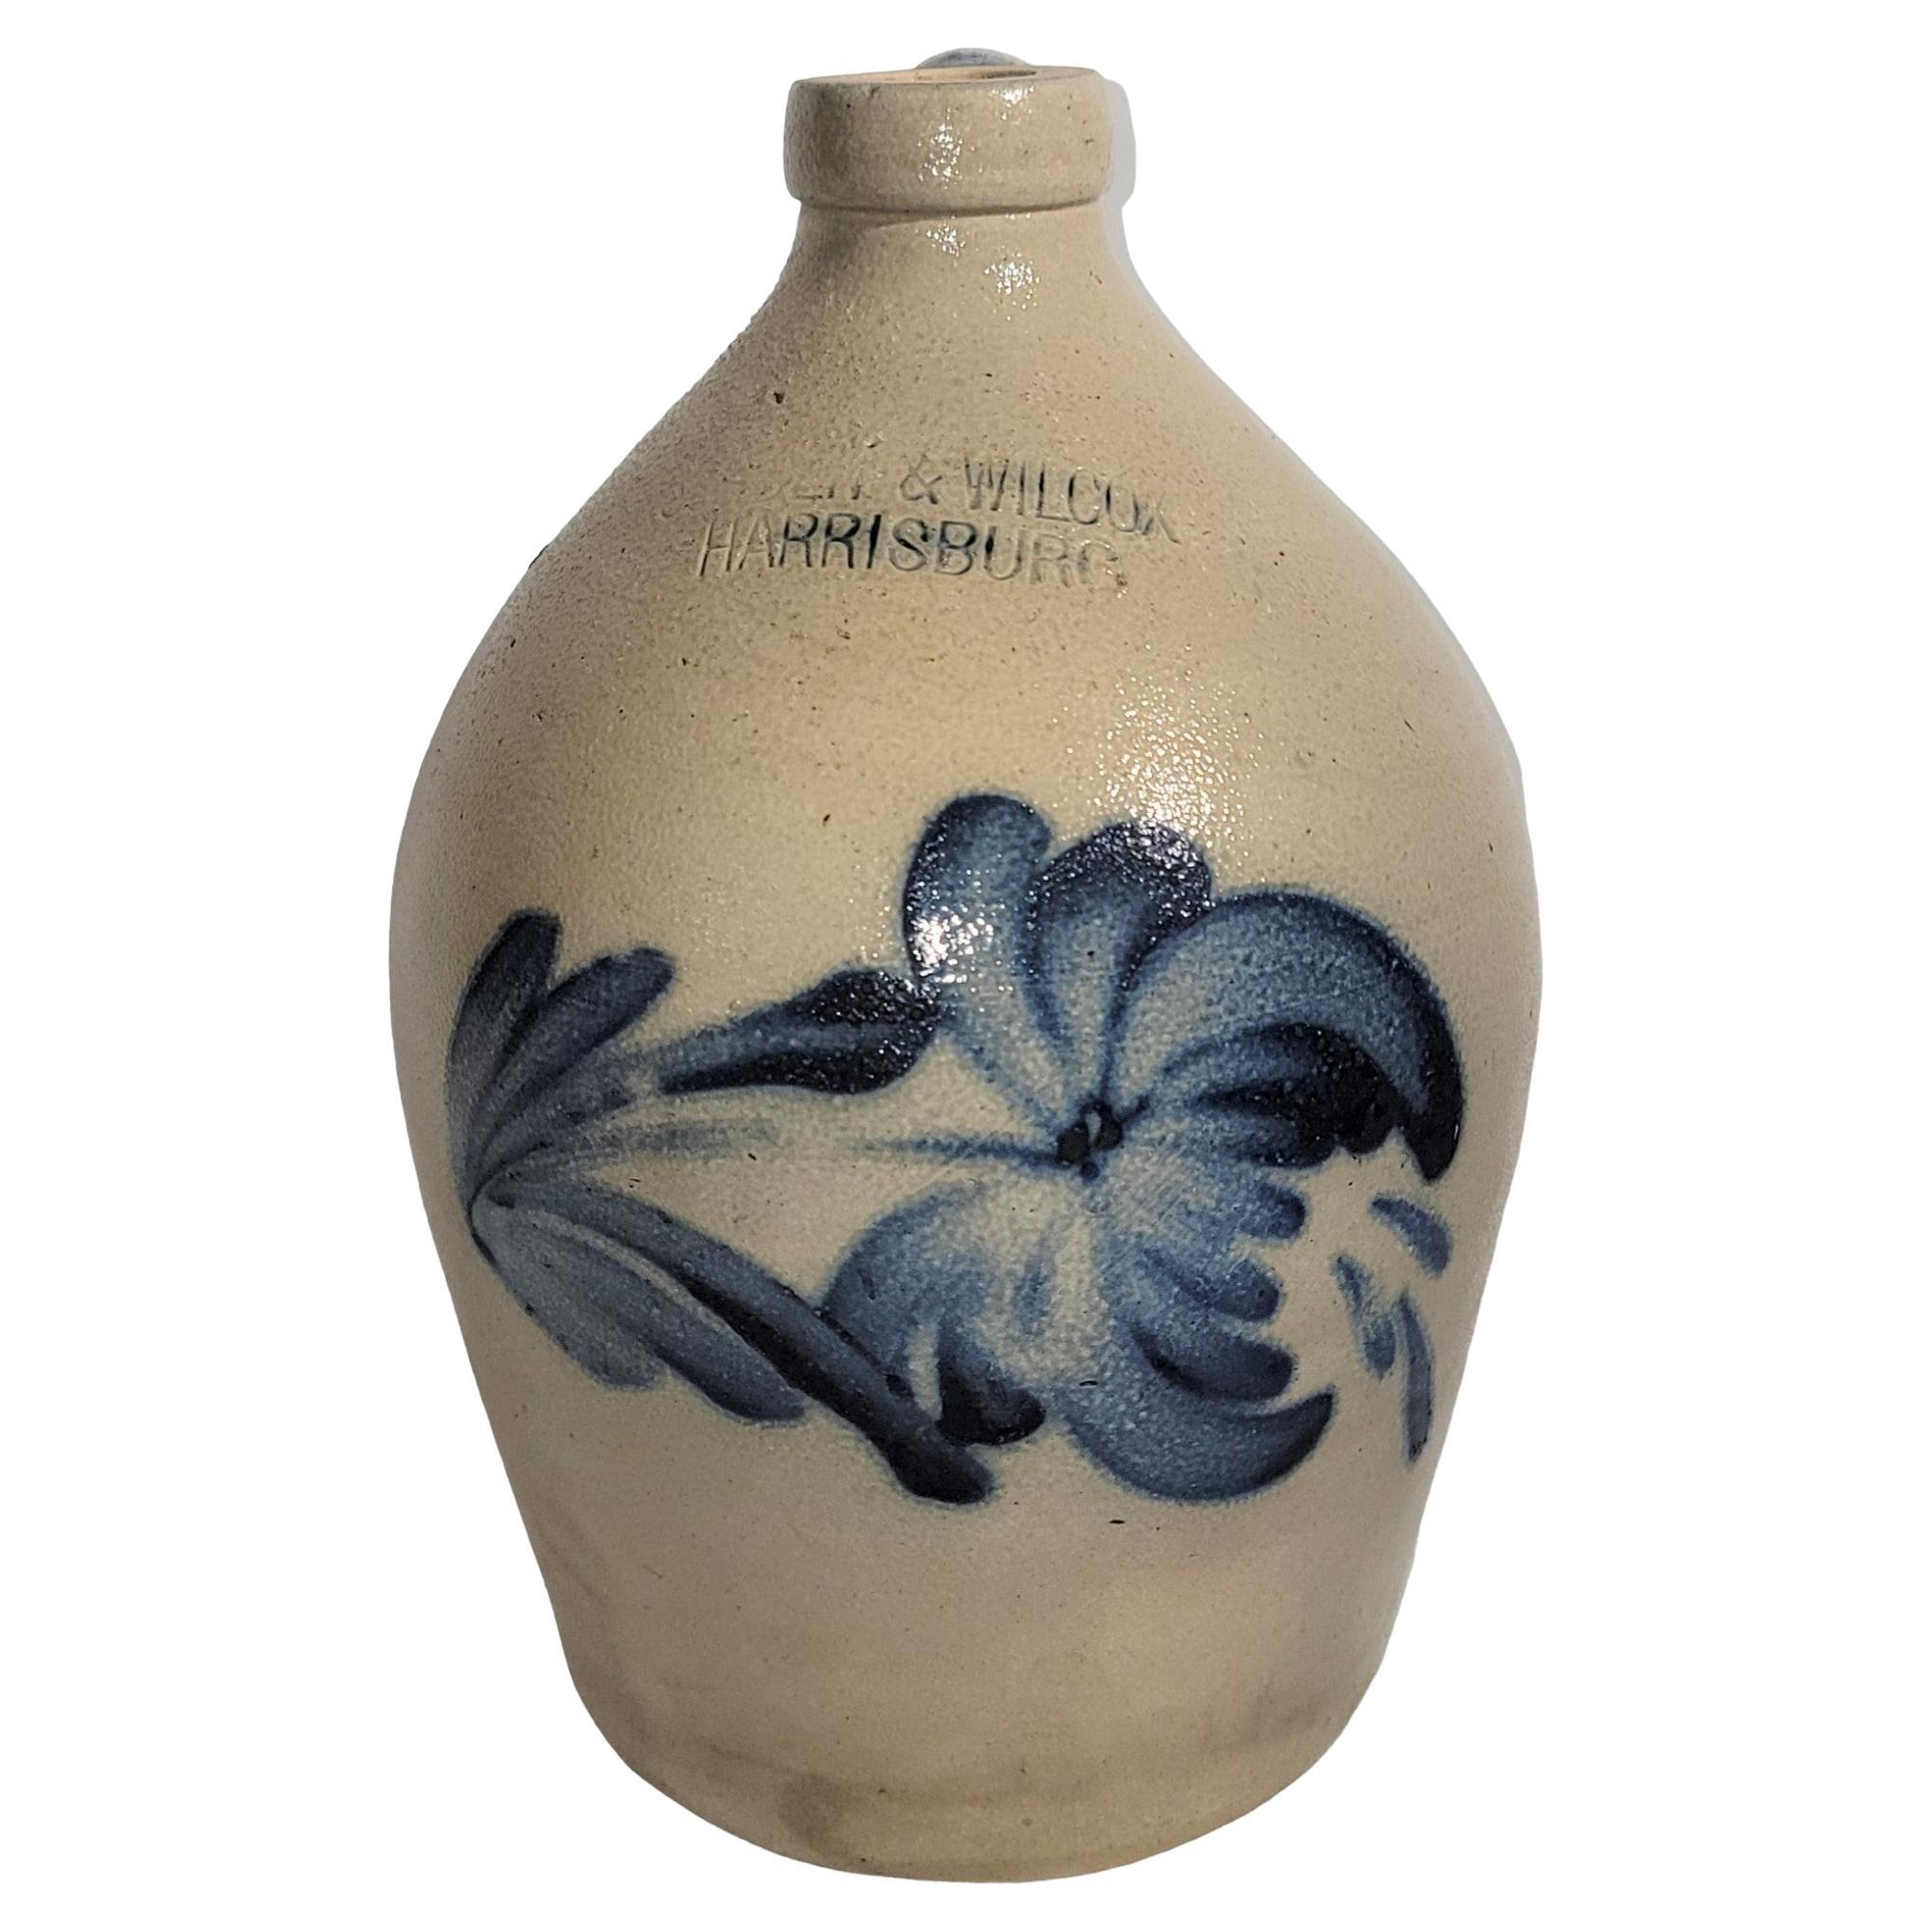 19th Century Decorated Salt Glaze Jug -Cowden & Wilcox